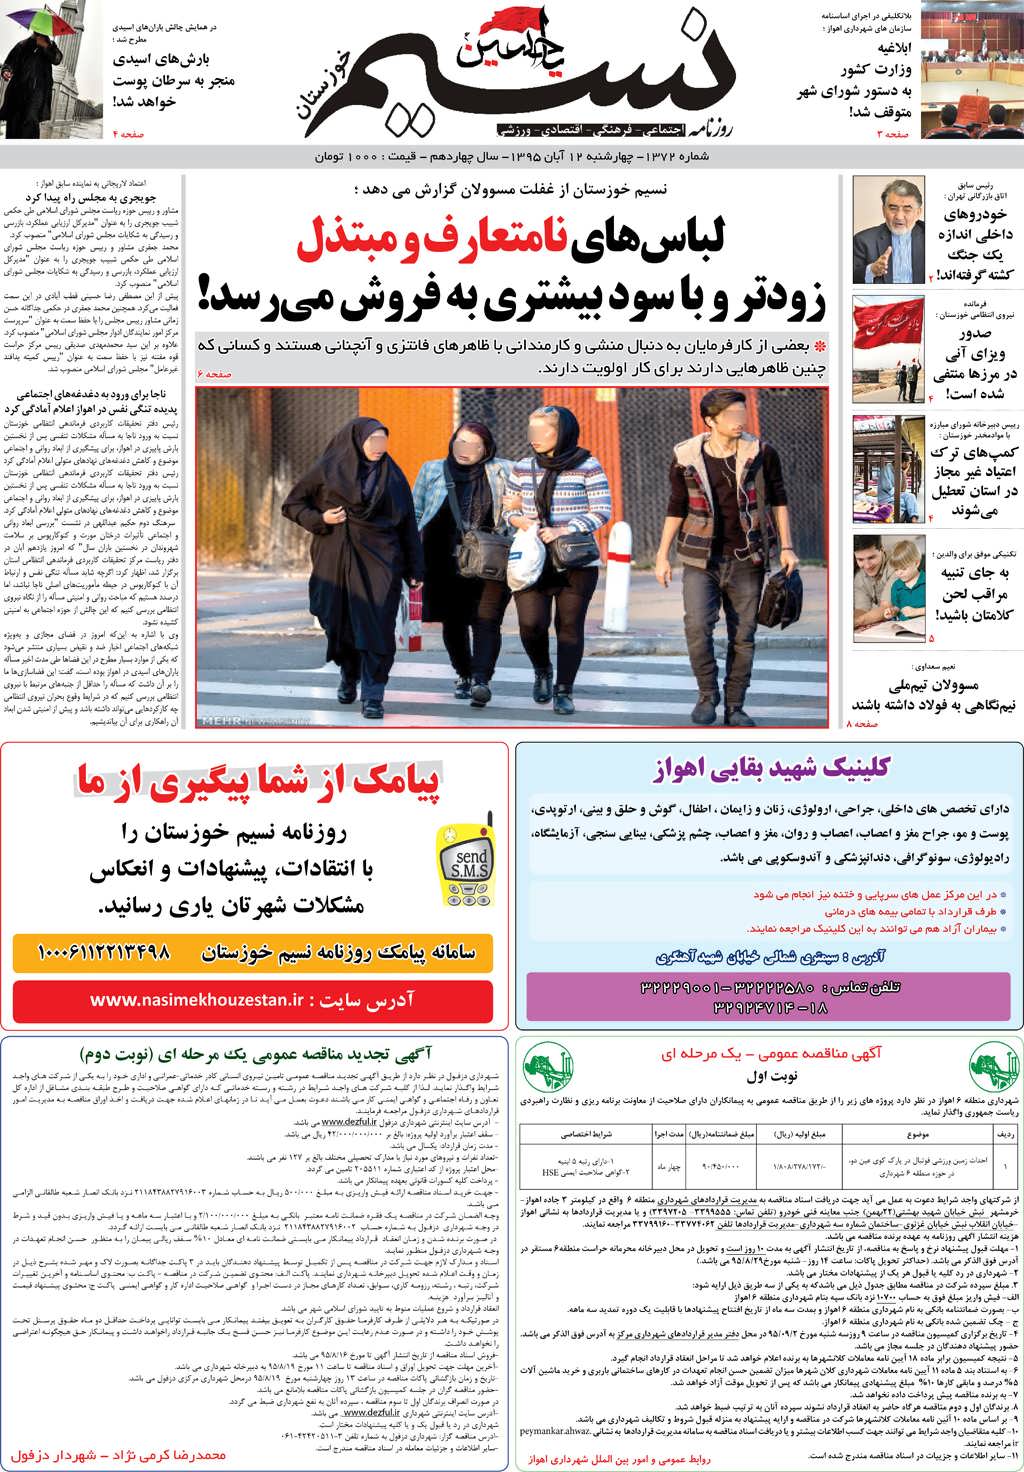 صفحه اصلی روزنامه نسیم شماره 1372